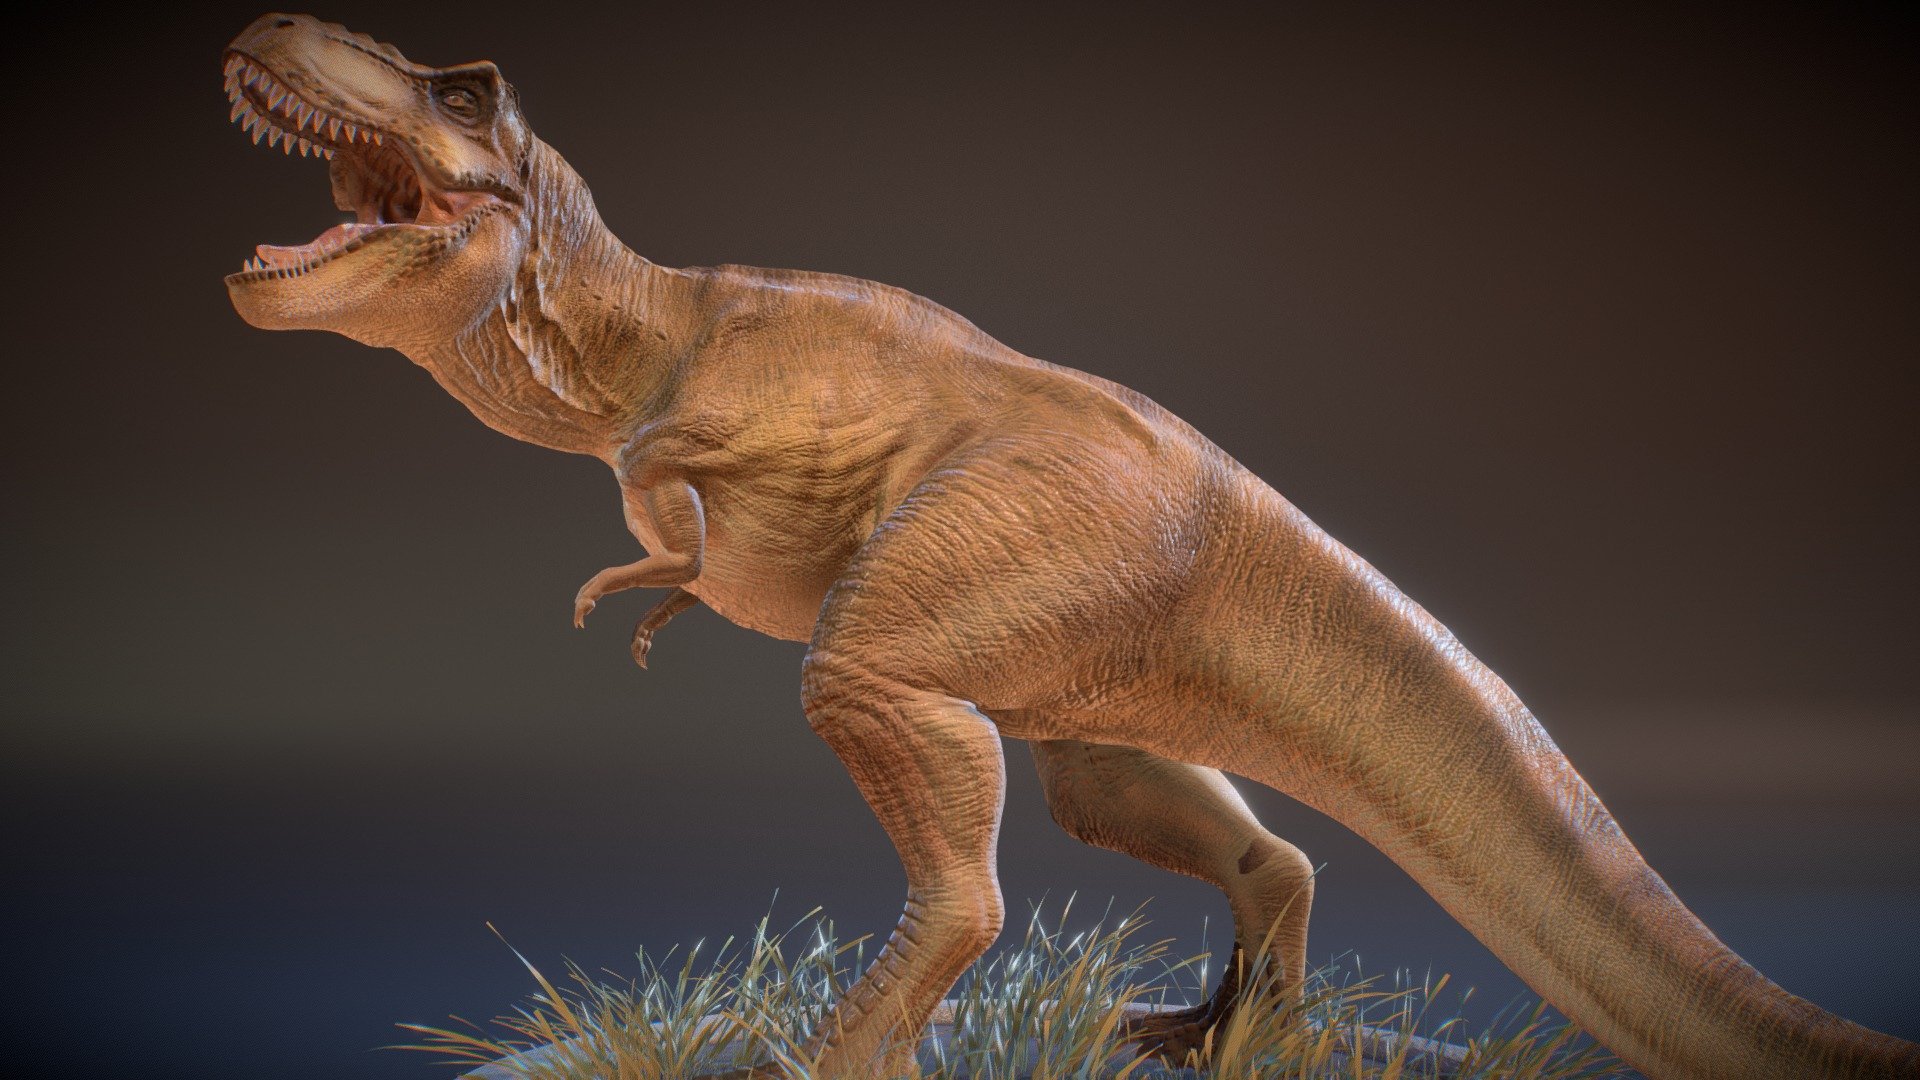 Visit my artstation to see renders: https://www.artstation.com/artwork/xzOJer

It isn't to download in any way.

T-rex JP3: https://skfb.ly/6DFHI

T-rex TLW (Buck): https://skfb.ly/6xMrs - T-rex Jurassic park REXY (Fan art) - 3D model by David RR (@david222) 3d model